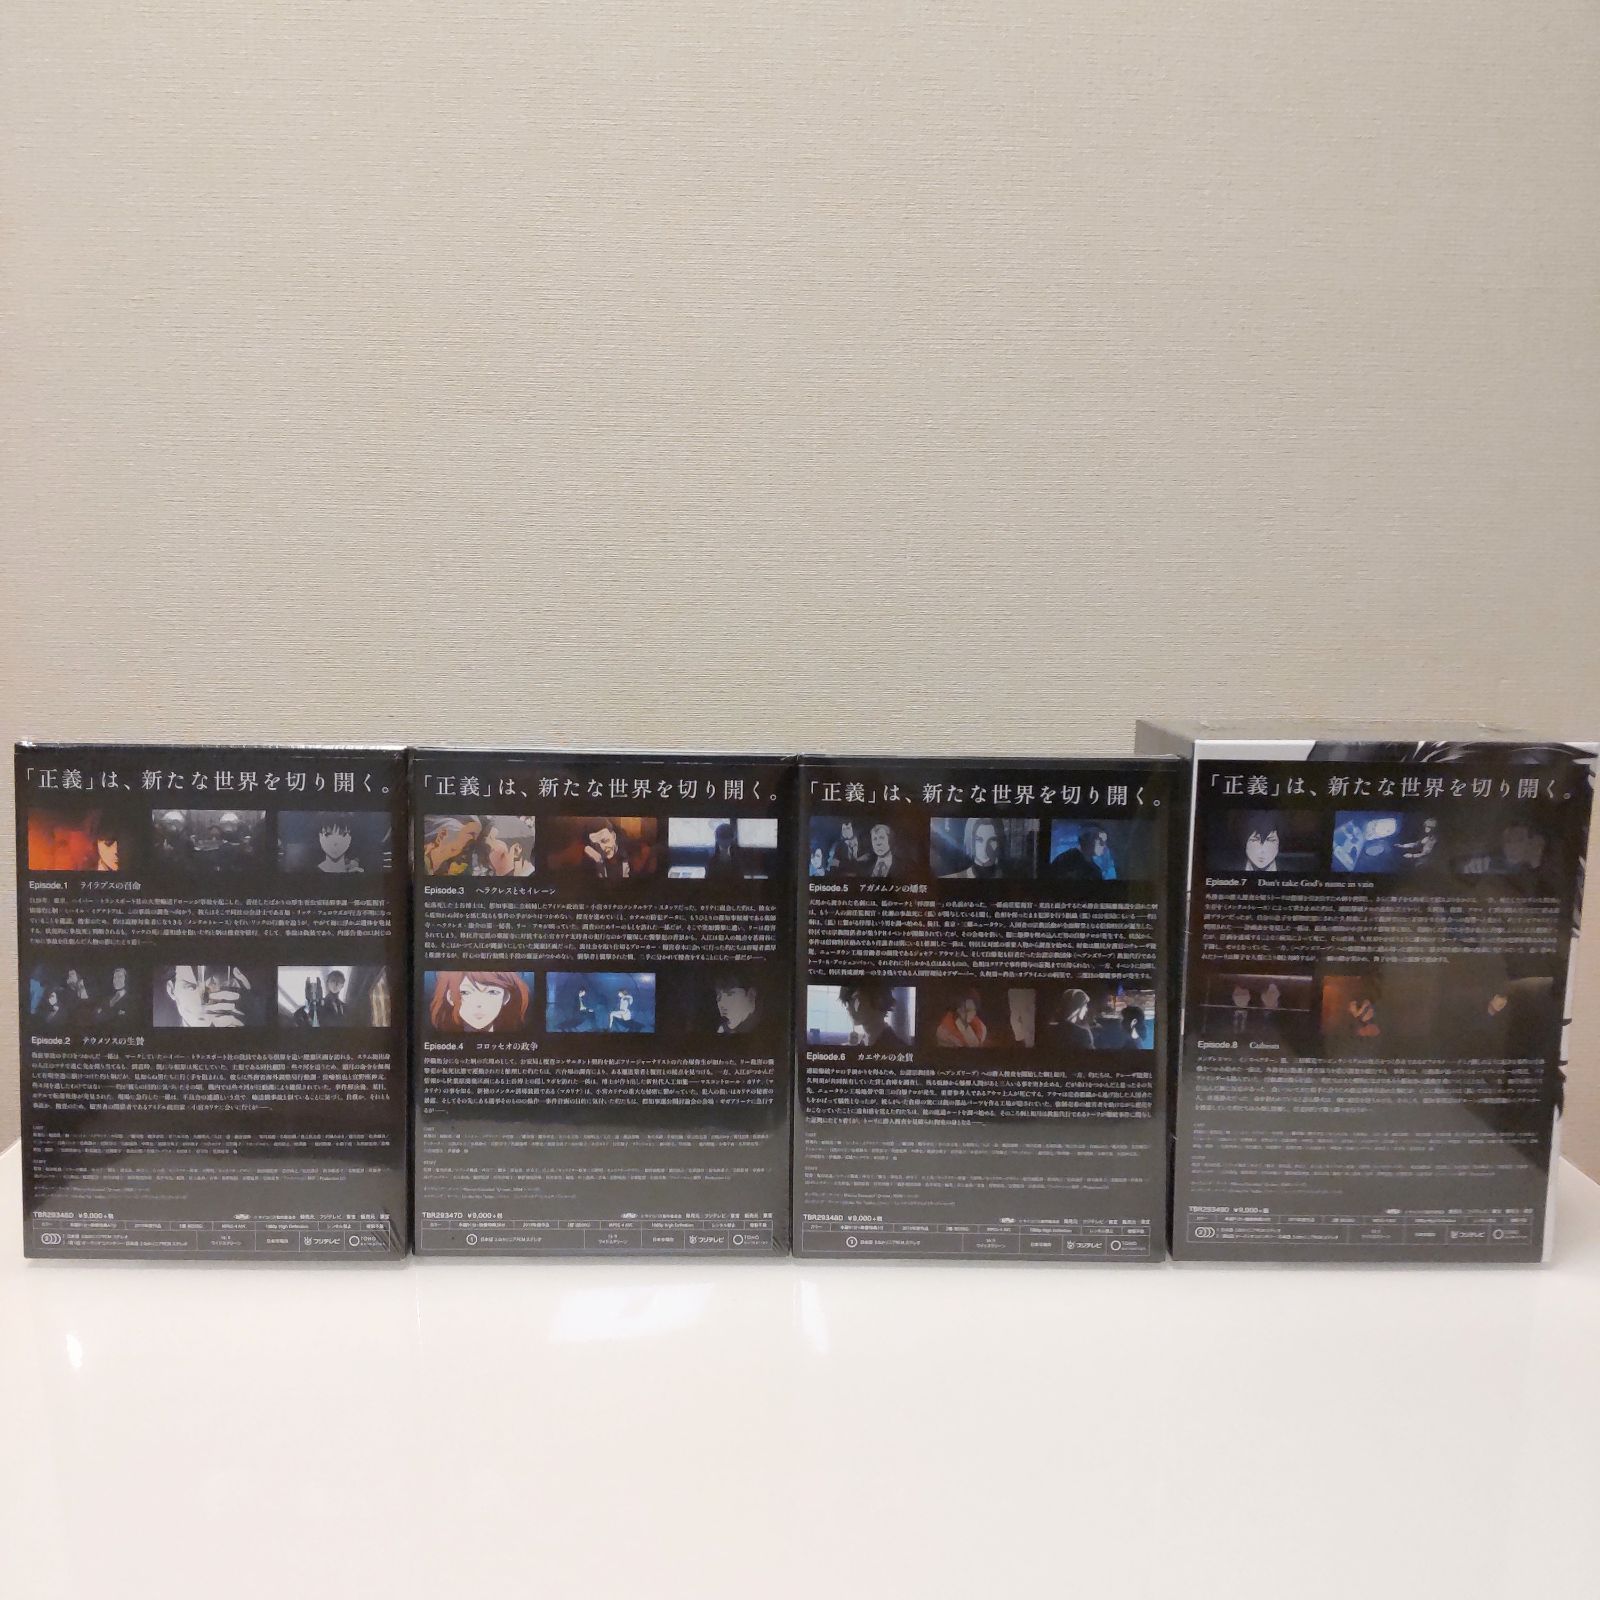 PSYCHO-PASS サイコパス 3 初回生産限定版 Blu-ray Vol.1-4 全4巻 